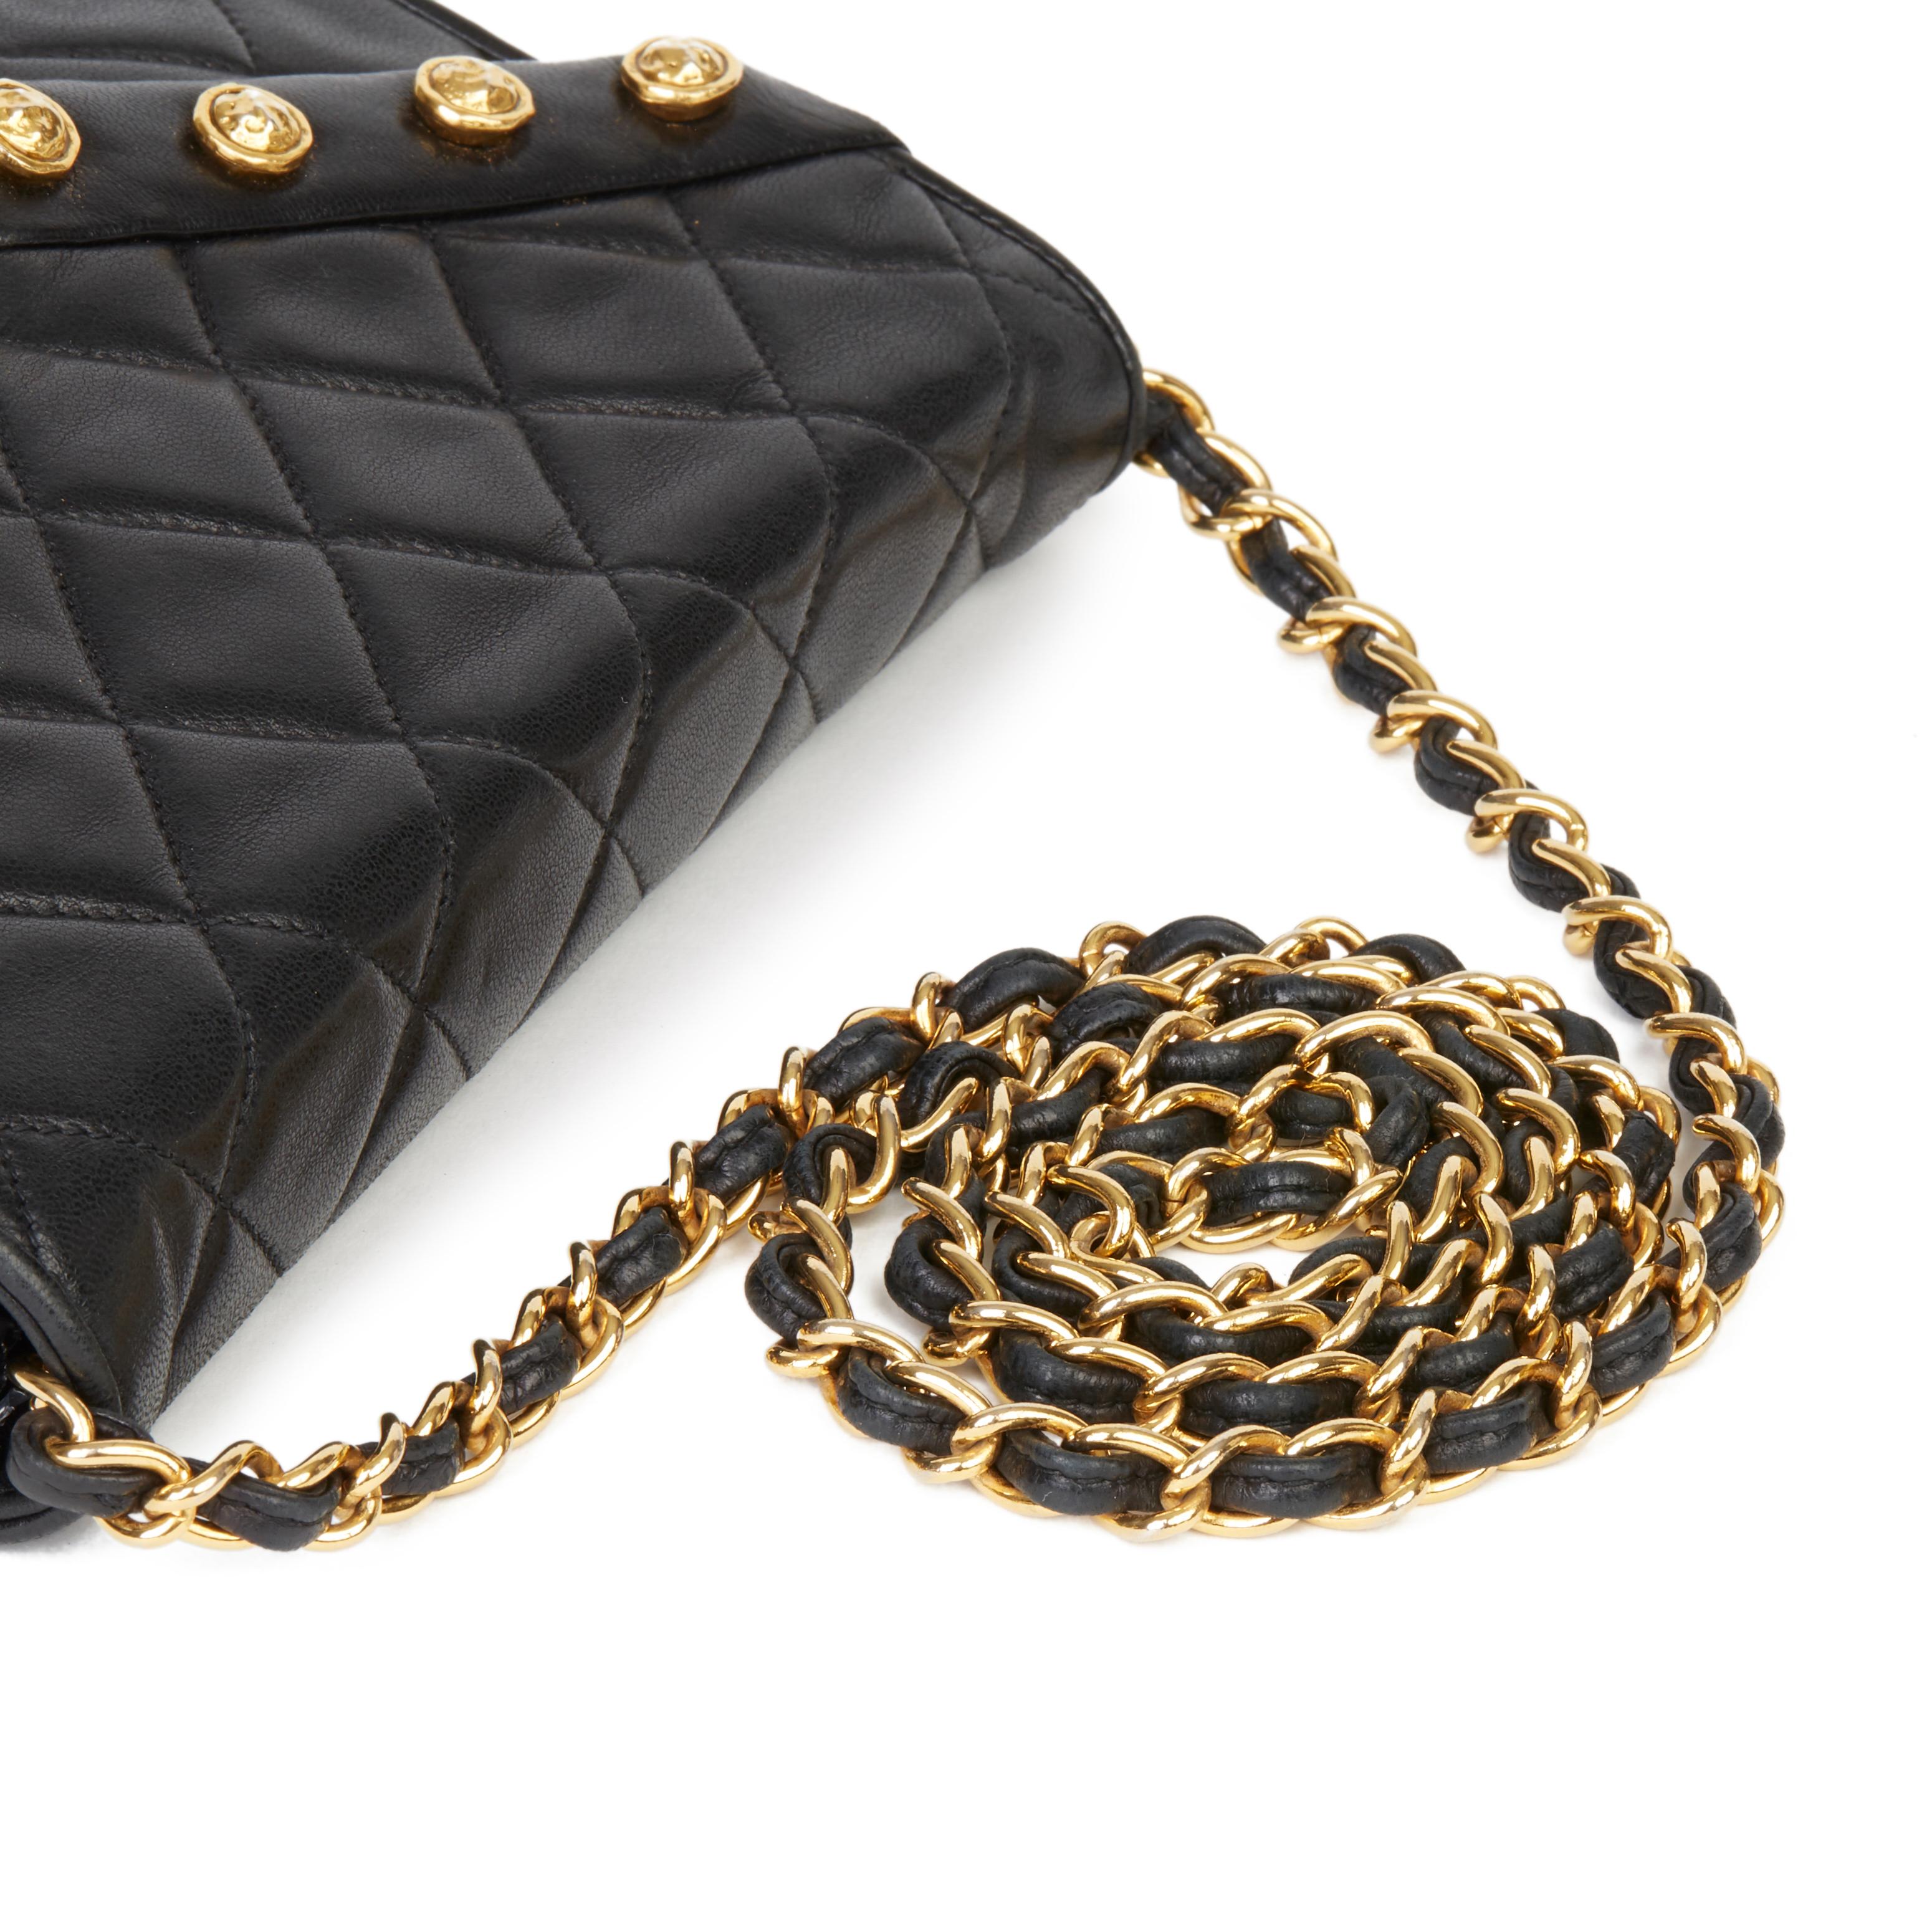 1987 Chanel Black Quilted Lambskin Vintage Studded Envelope Single Flap Bag 1